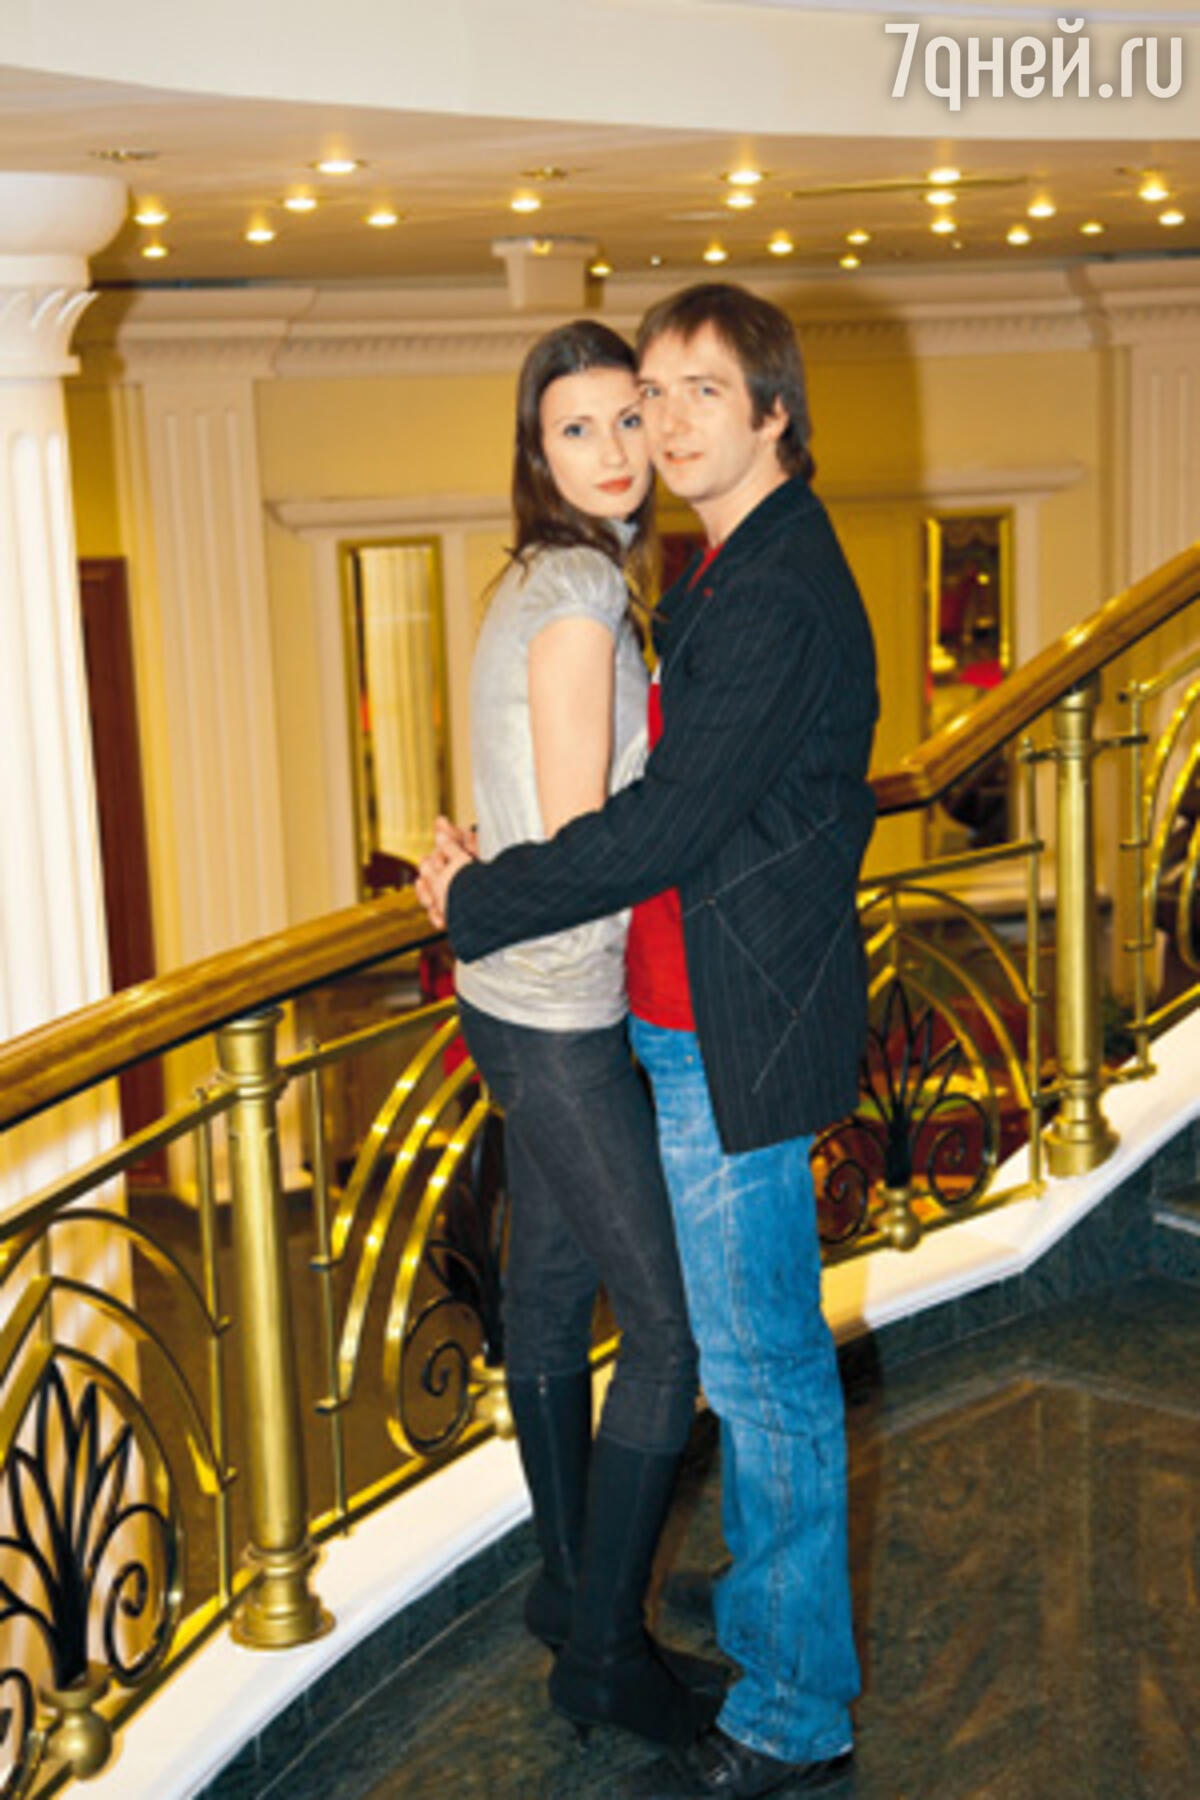 Петр Красилов фото с женой